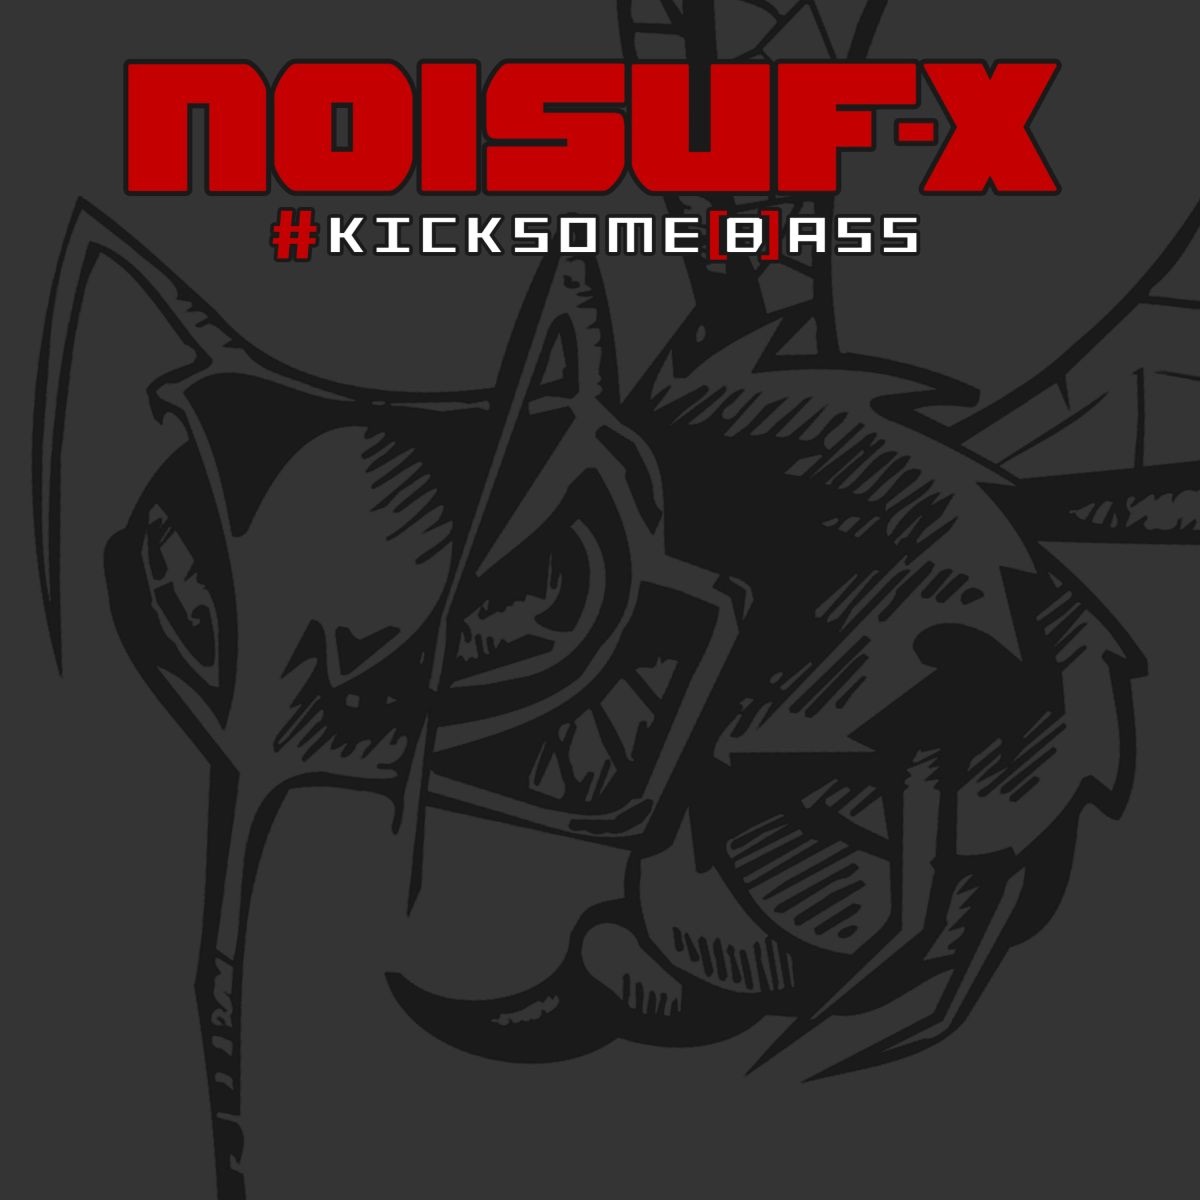 Noisuf-X-#kicksome[b]ass